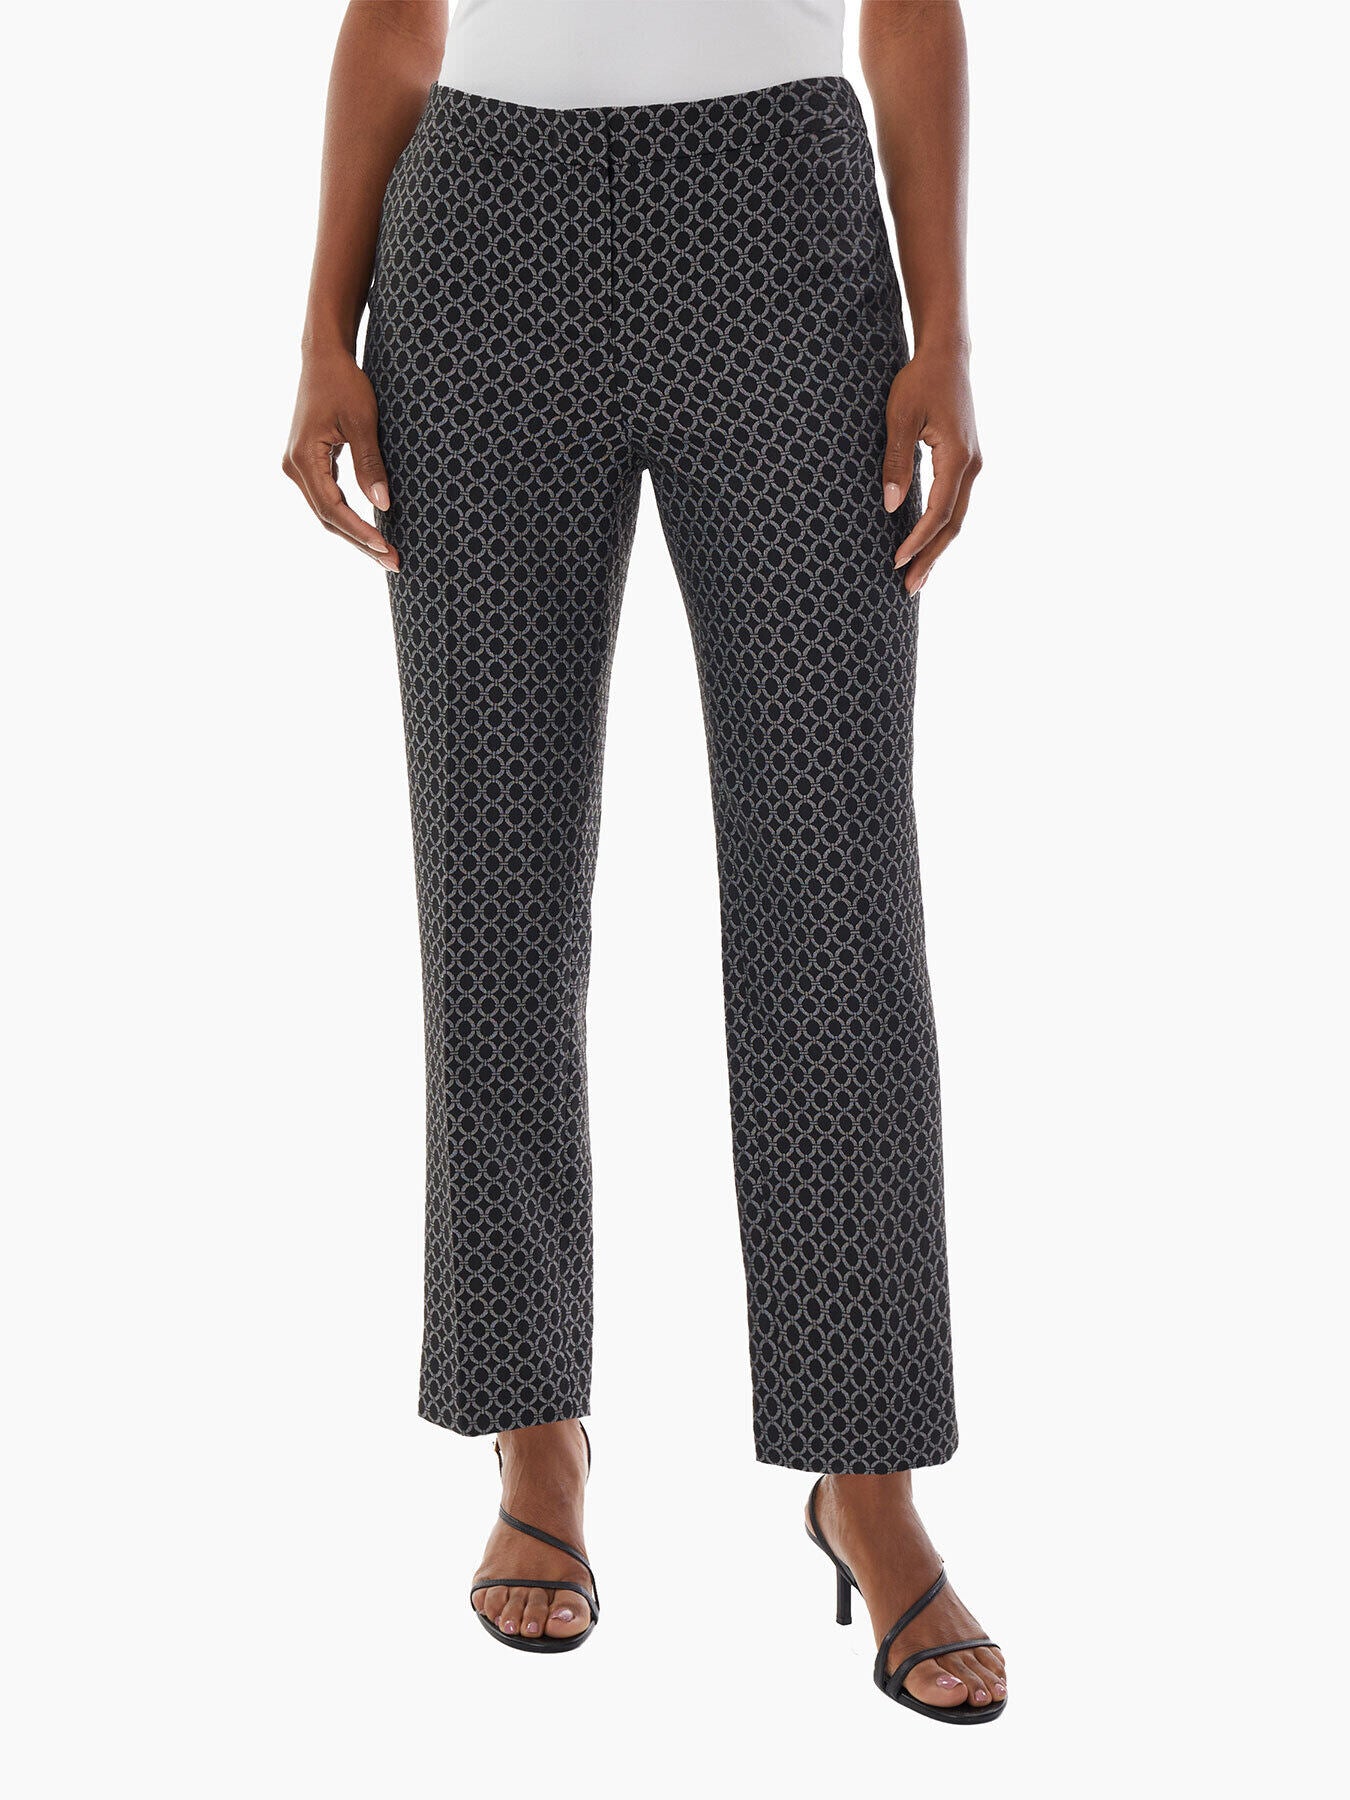 Jacquard Pants - Geometric Dress Pants